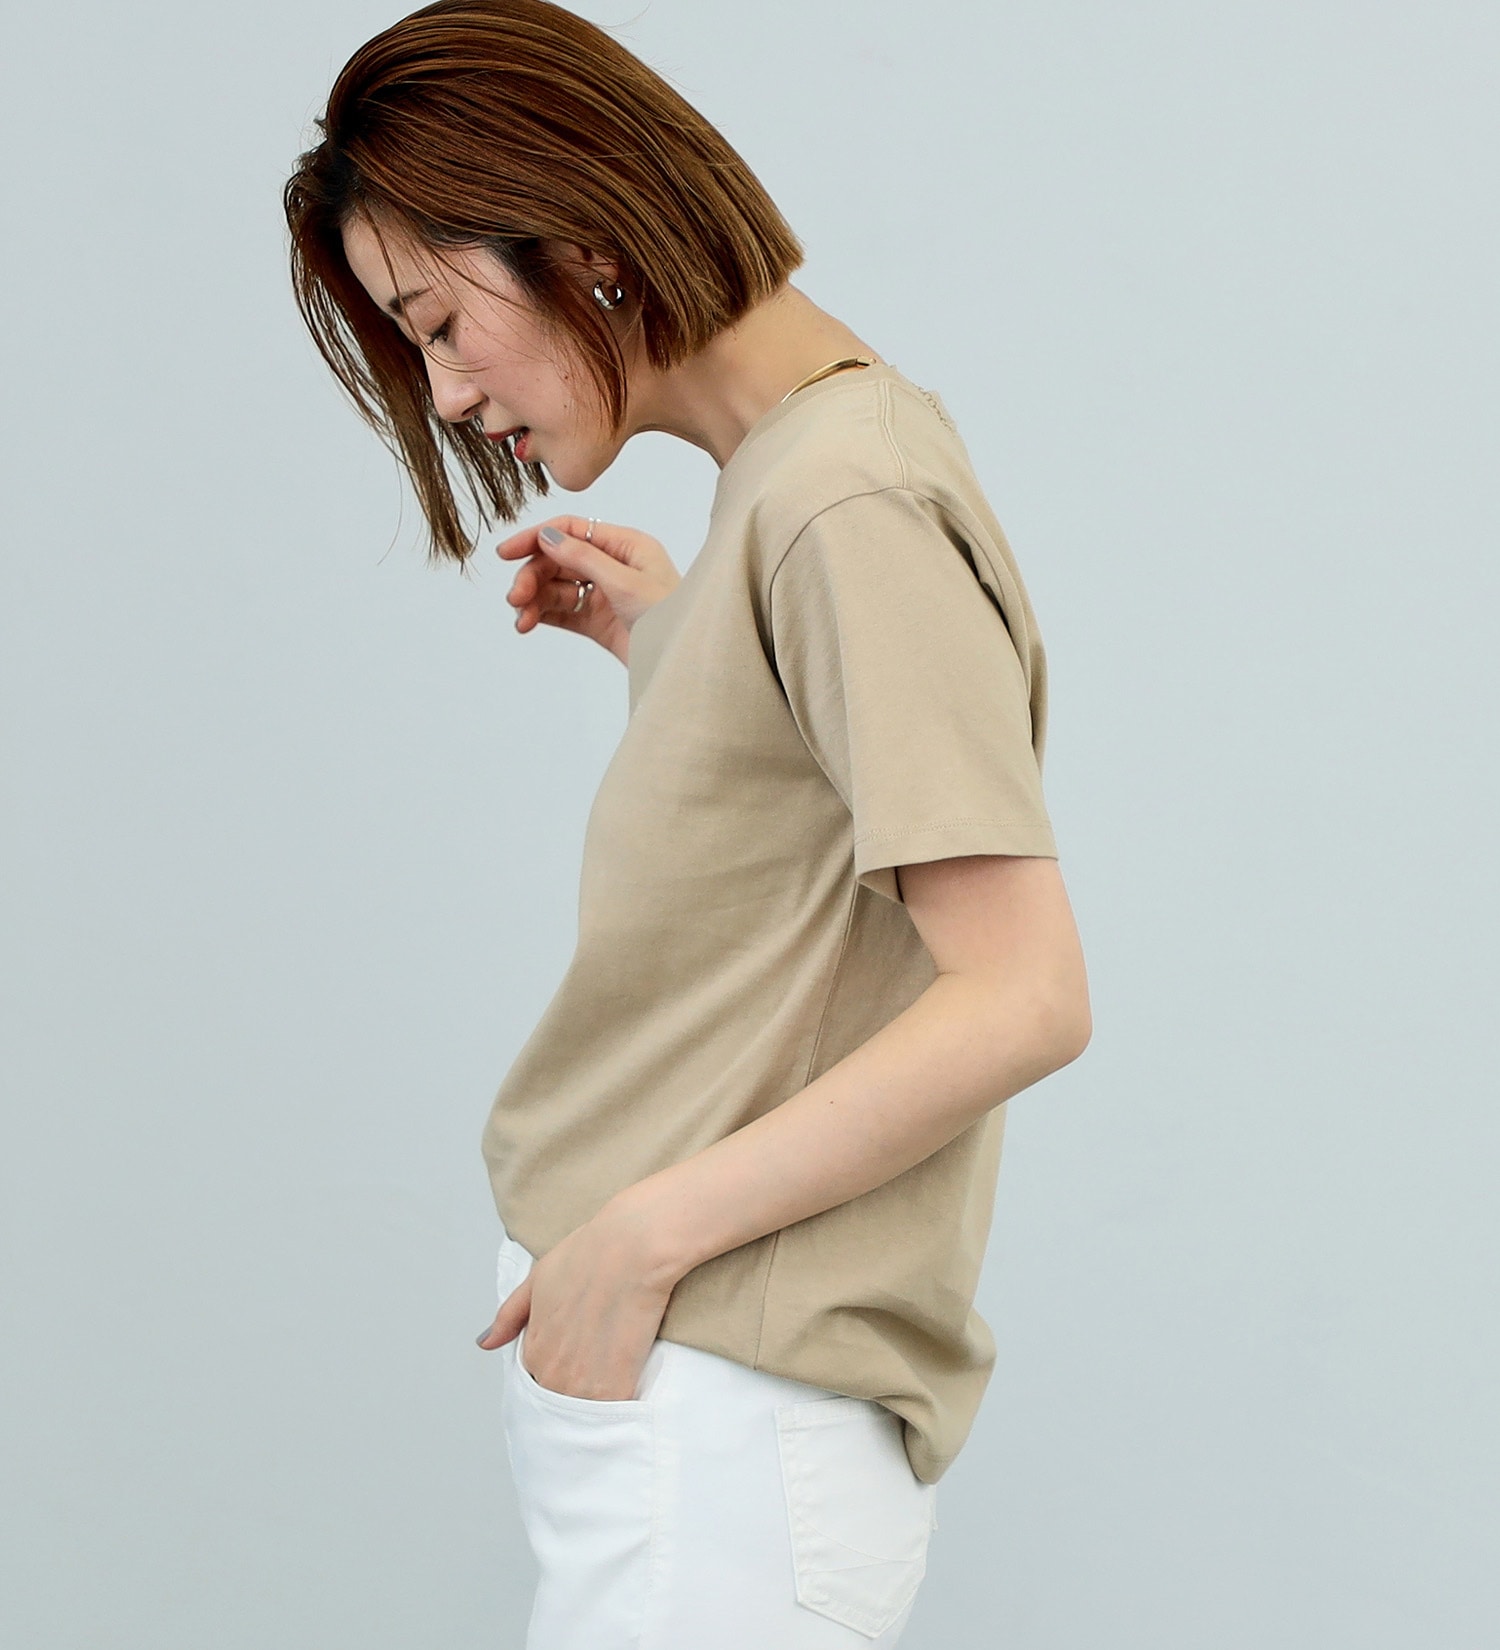 SOMETHING(サムシング)のSOMETHING コンセプトロゴ半袖Tシャツ|トップス/Tシャツ/カットソー/レディース|ベージュ